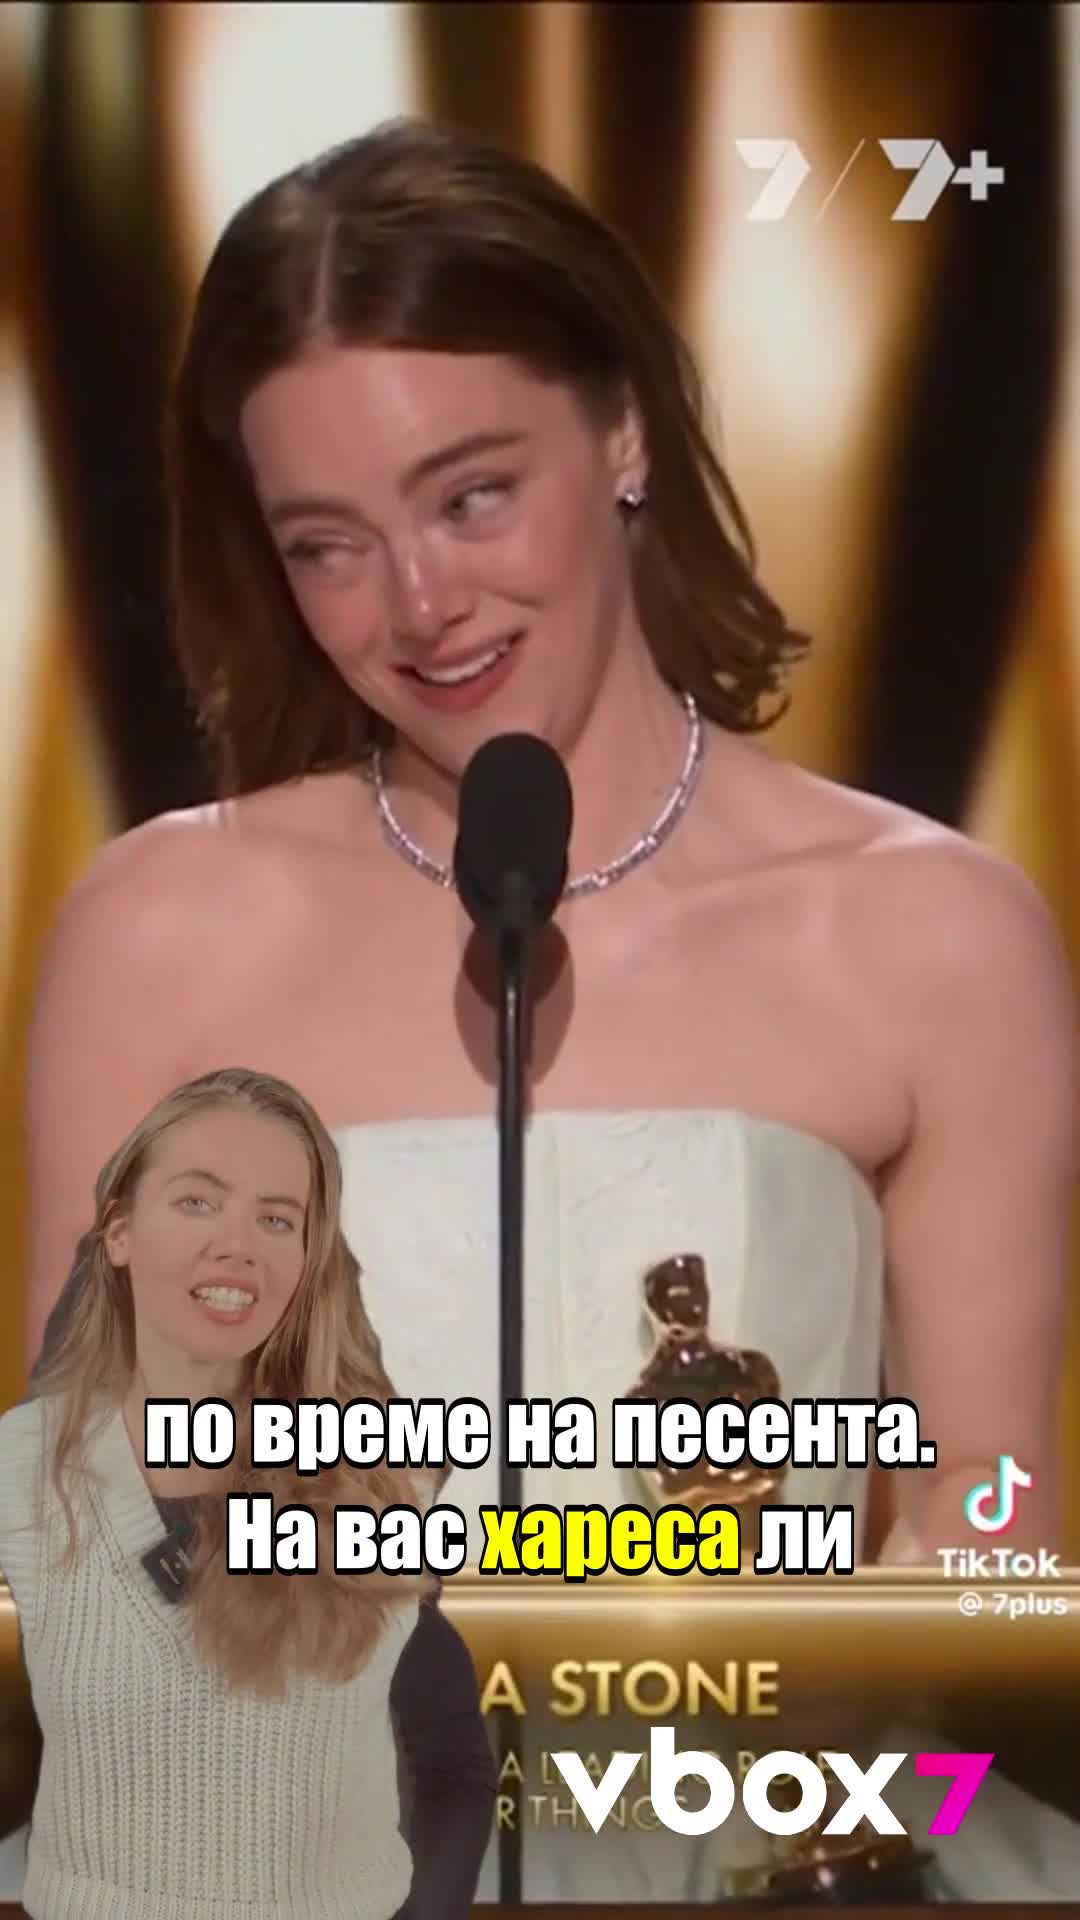 Ема Стоун взе „Оскар“ със СКЪСАНА рокля!